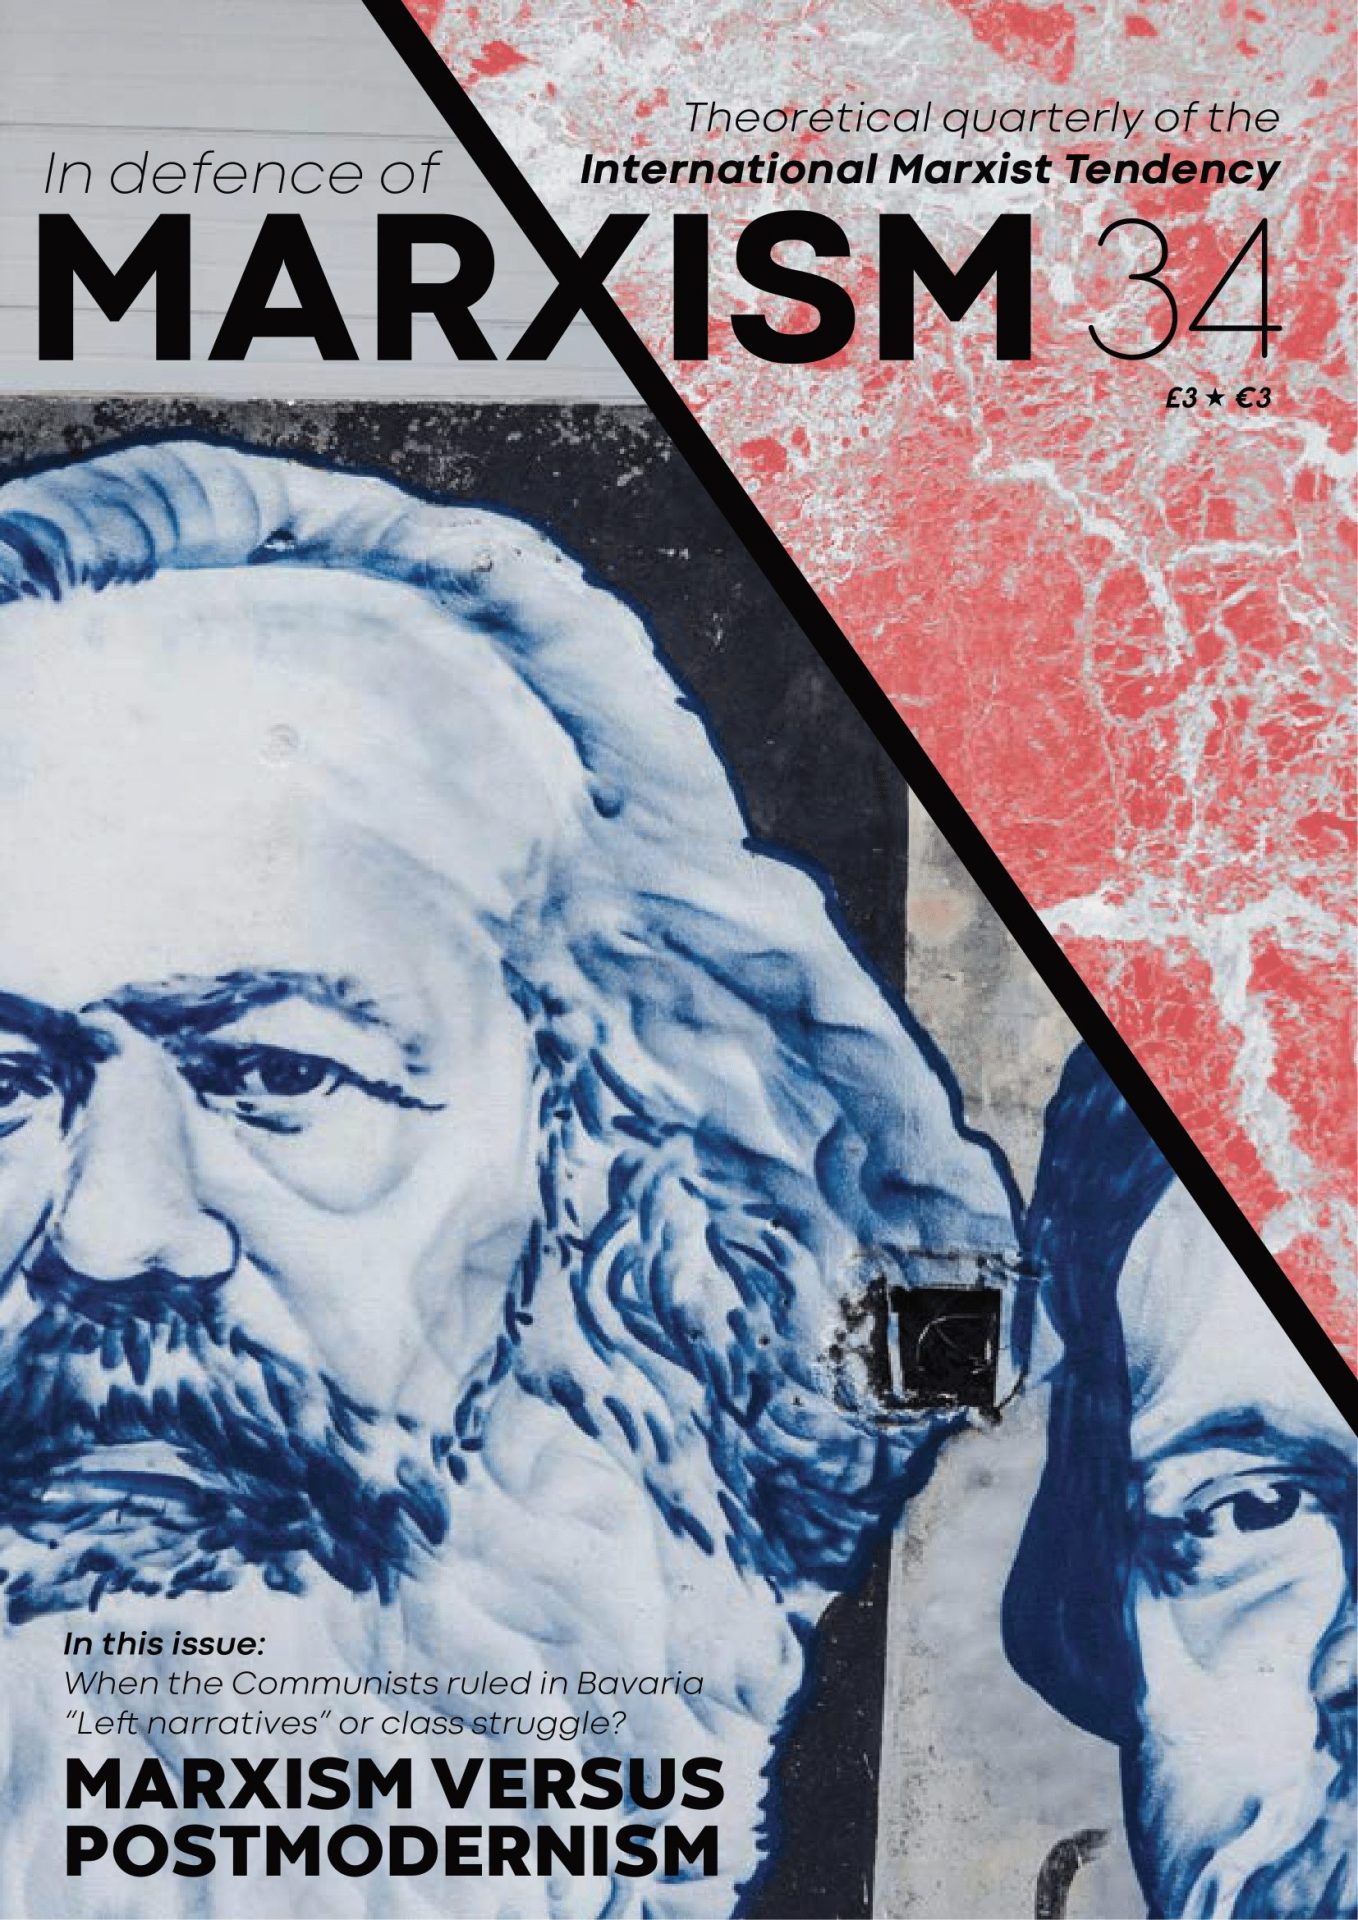 Okładka marksistowskiego magazynu teoretycznego - In Defence of Marxism.